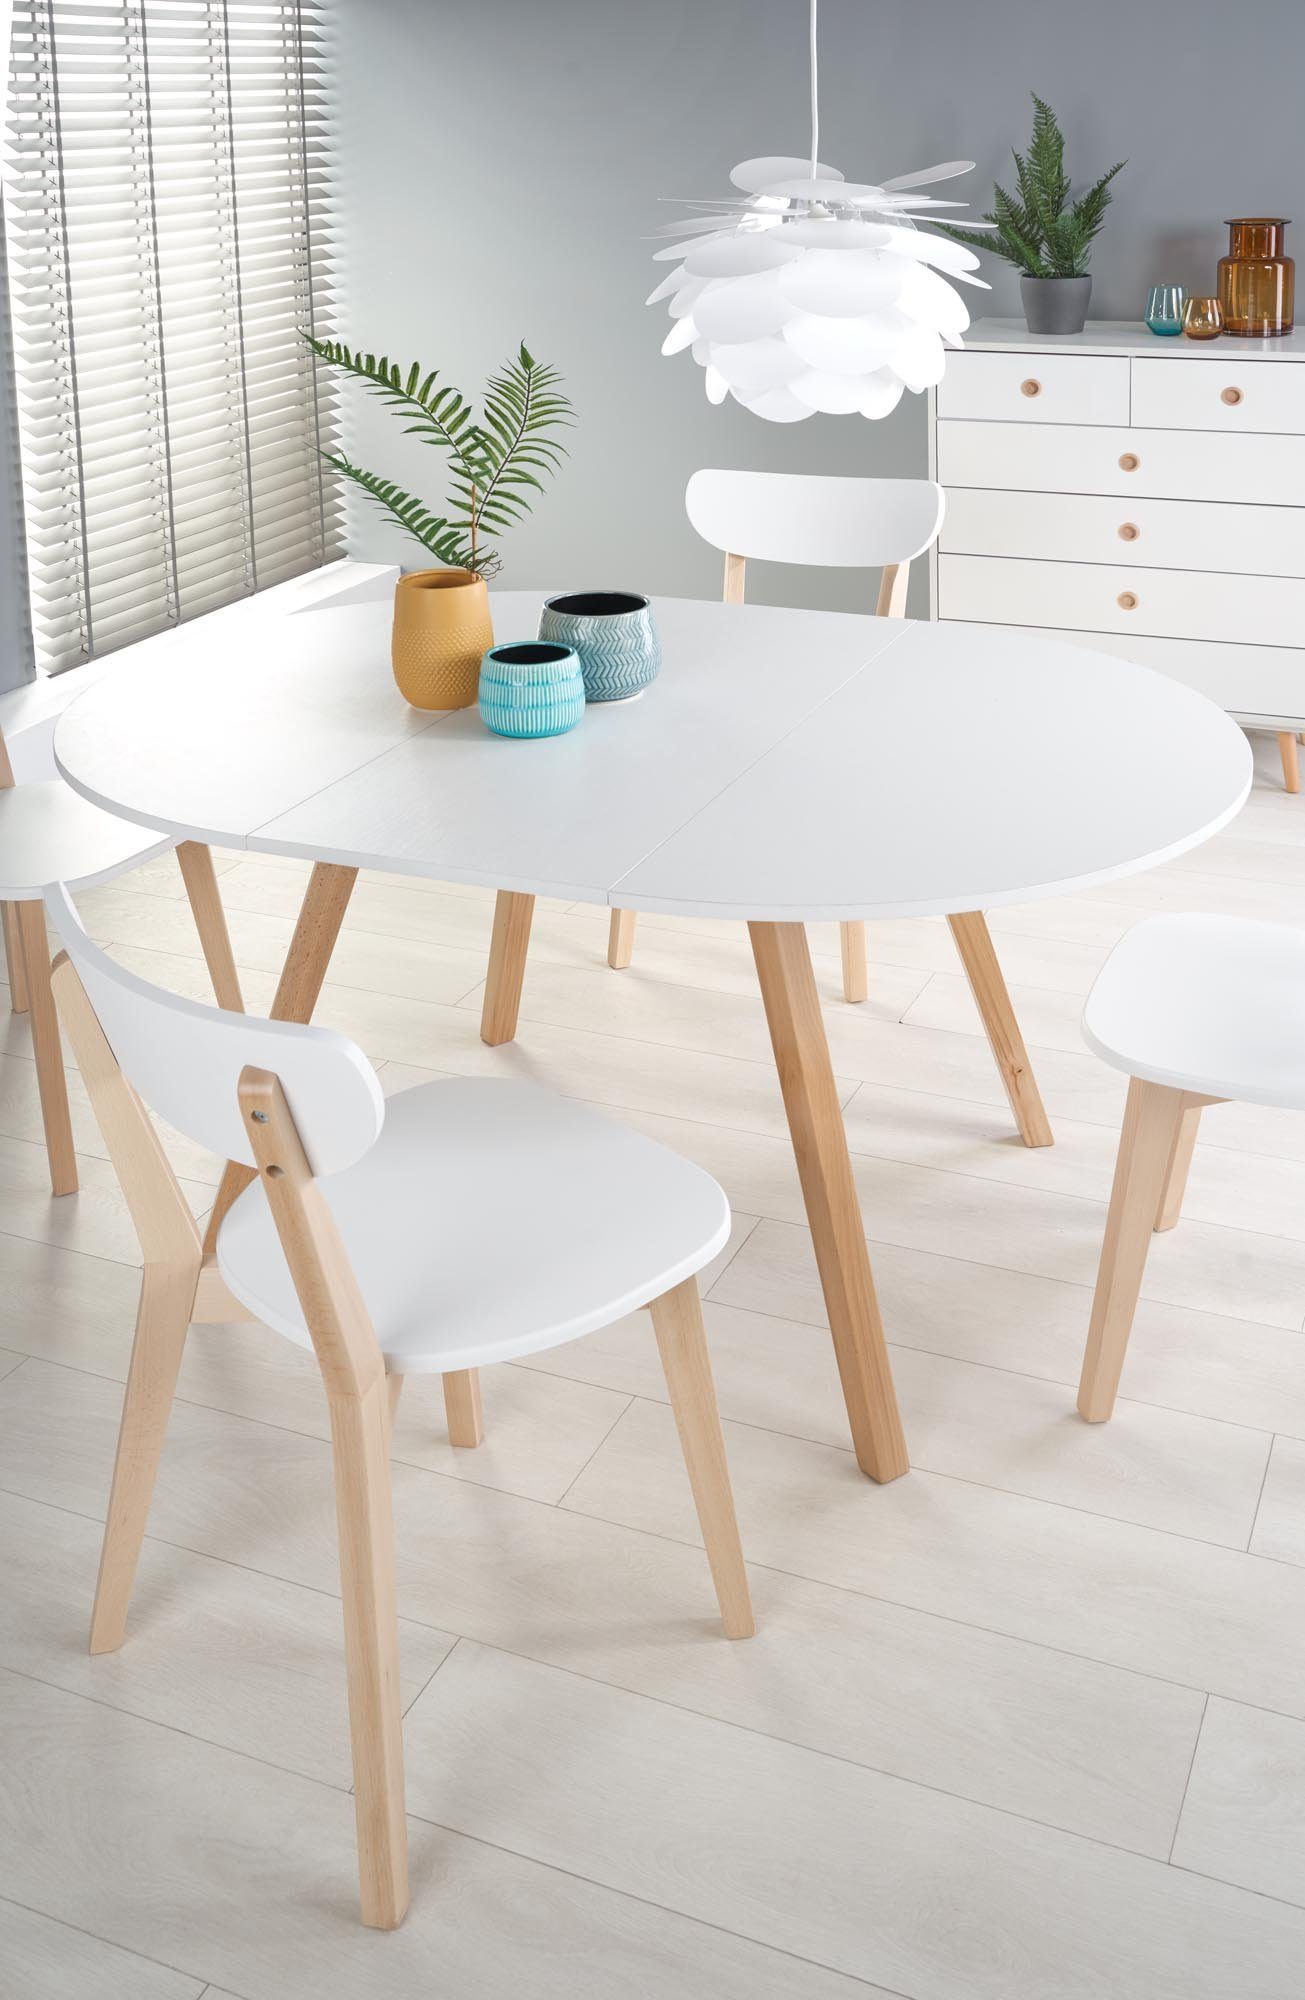 102-142cm designimpex - ausziehbar HAR-111 Esstisch Honigeiche Tisch rund Weiß matt Design